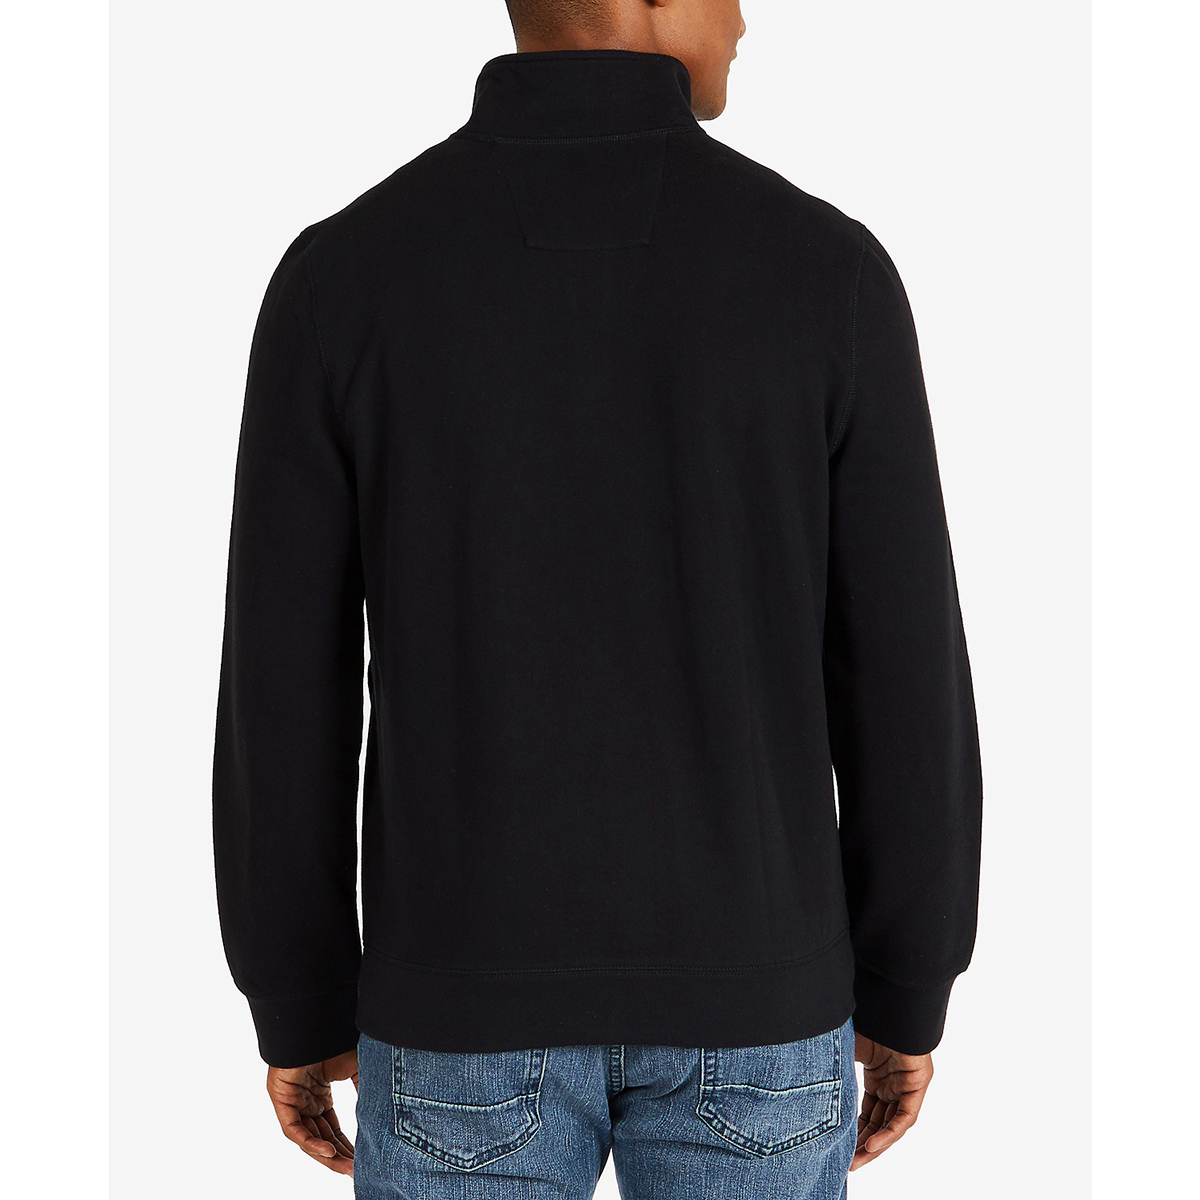 Nautica Men's 1/4 Zip Fleece Pullover | eBay